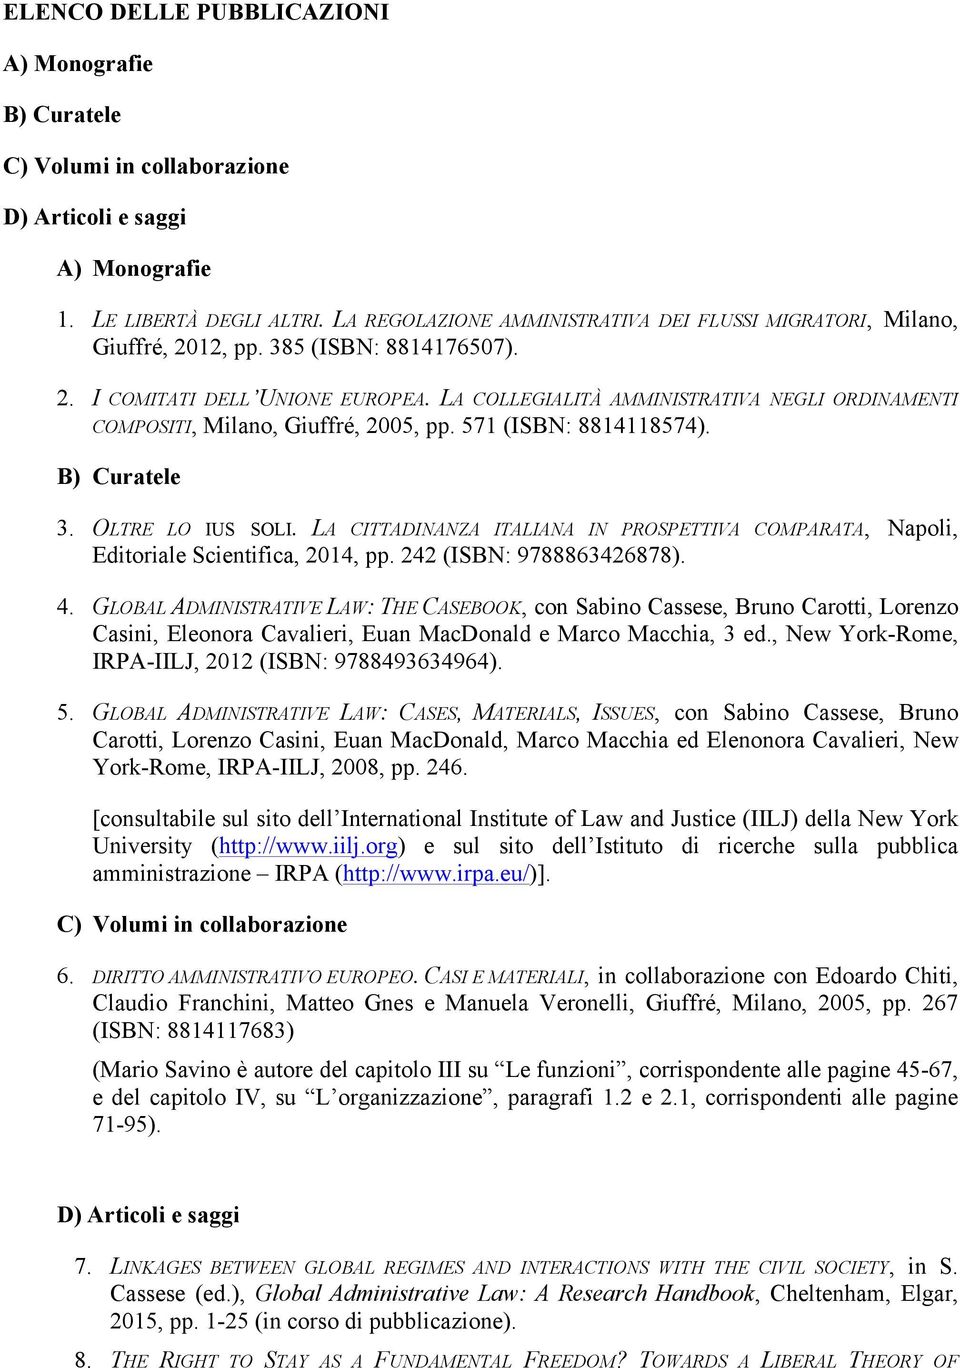 LA COLLEGIALITÀ AMMINISTRATIVA NEGLI ORDINAMENTI COMPOSITI, Milano, Giuffré, 2005, pp. 571 (ISBN: 8814118574). B) Curatele 3. OLTRE LO IUS SOLI.